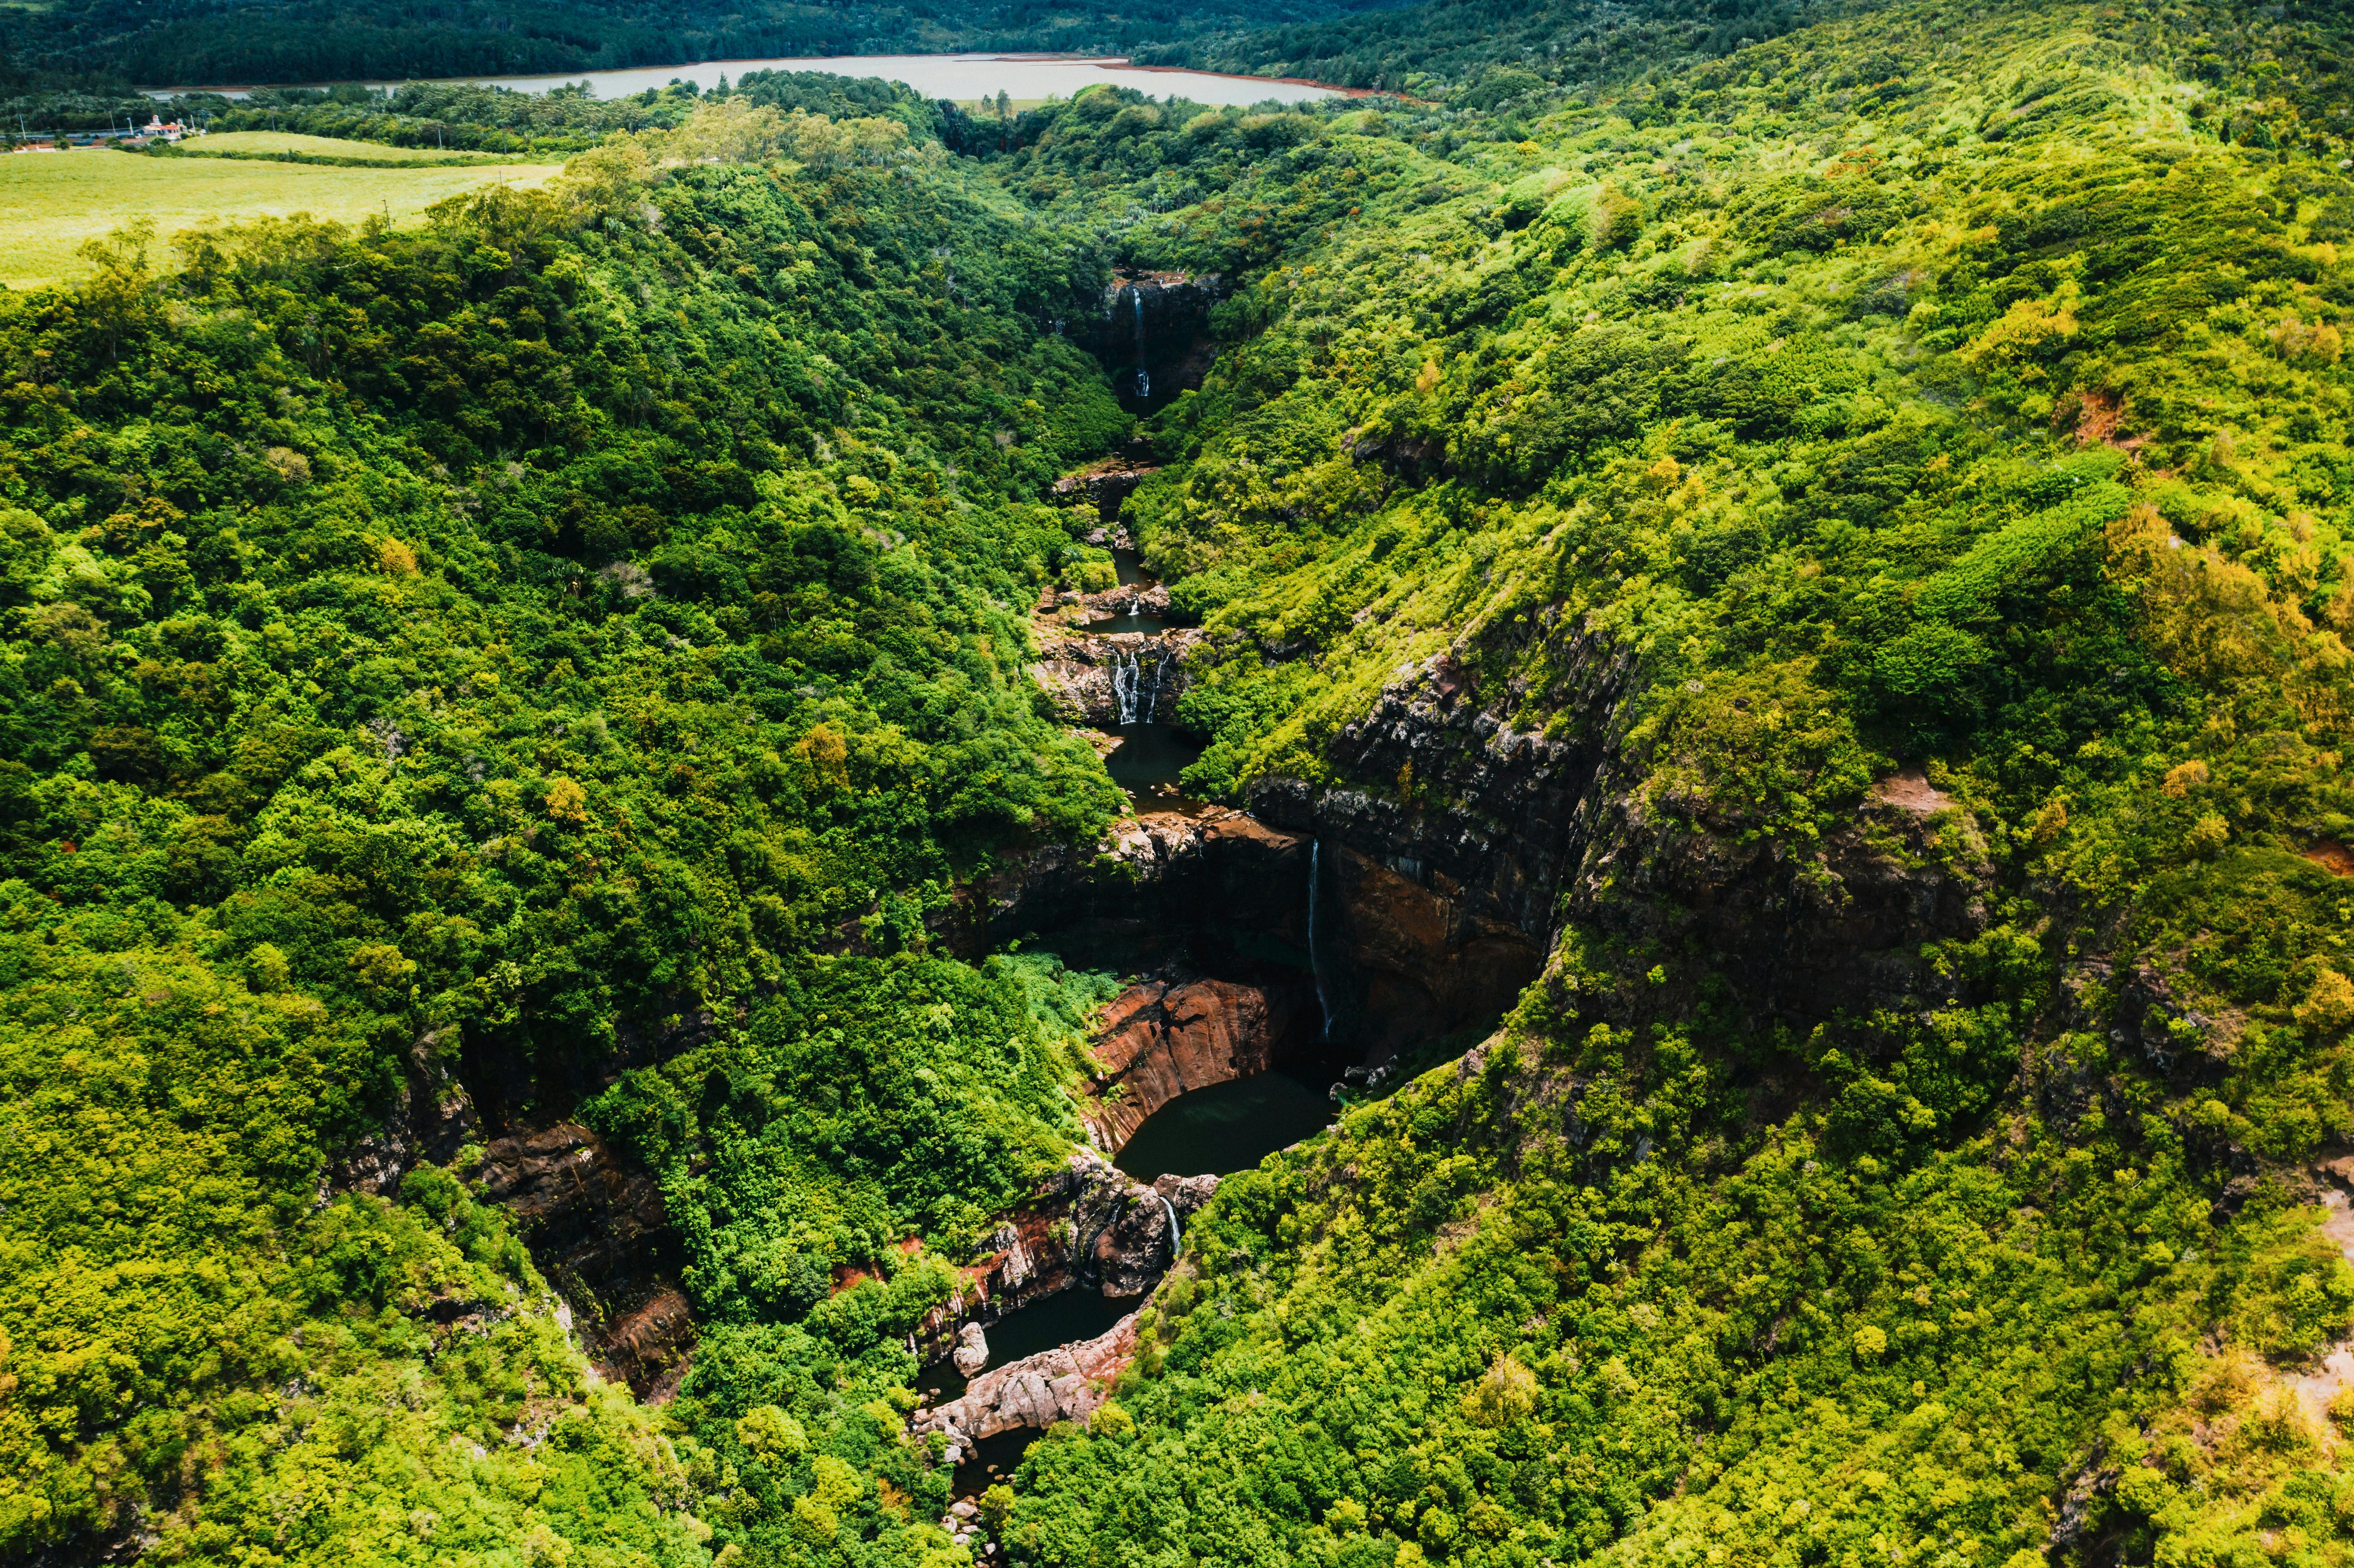 Mauritius 7 cascades canyoneering at the Tamarind Falls Musement